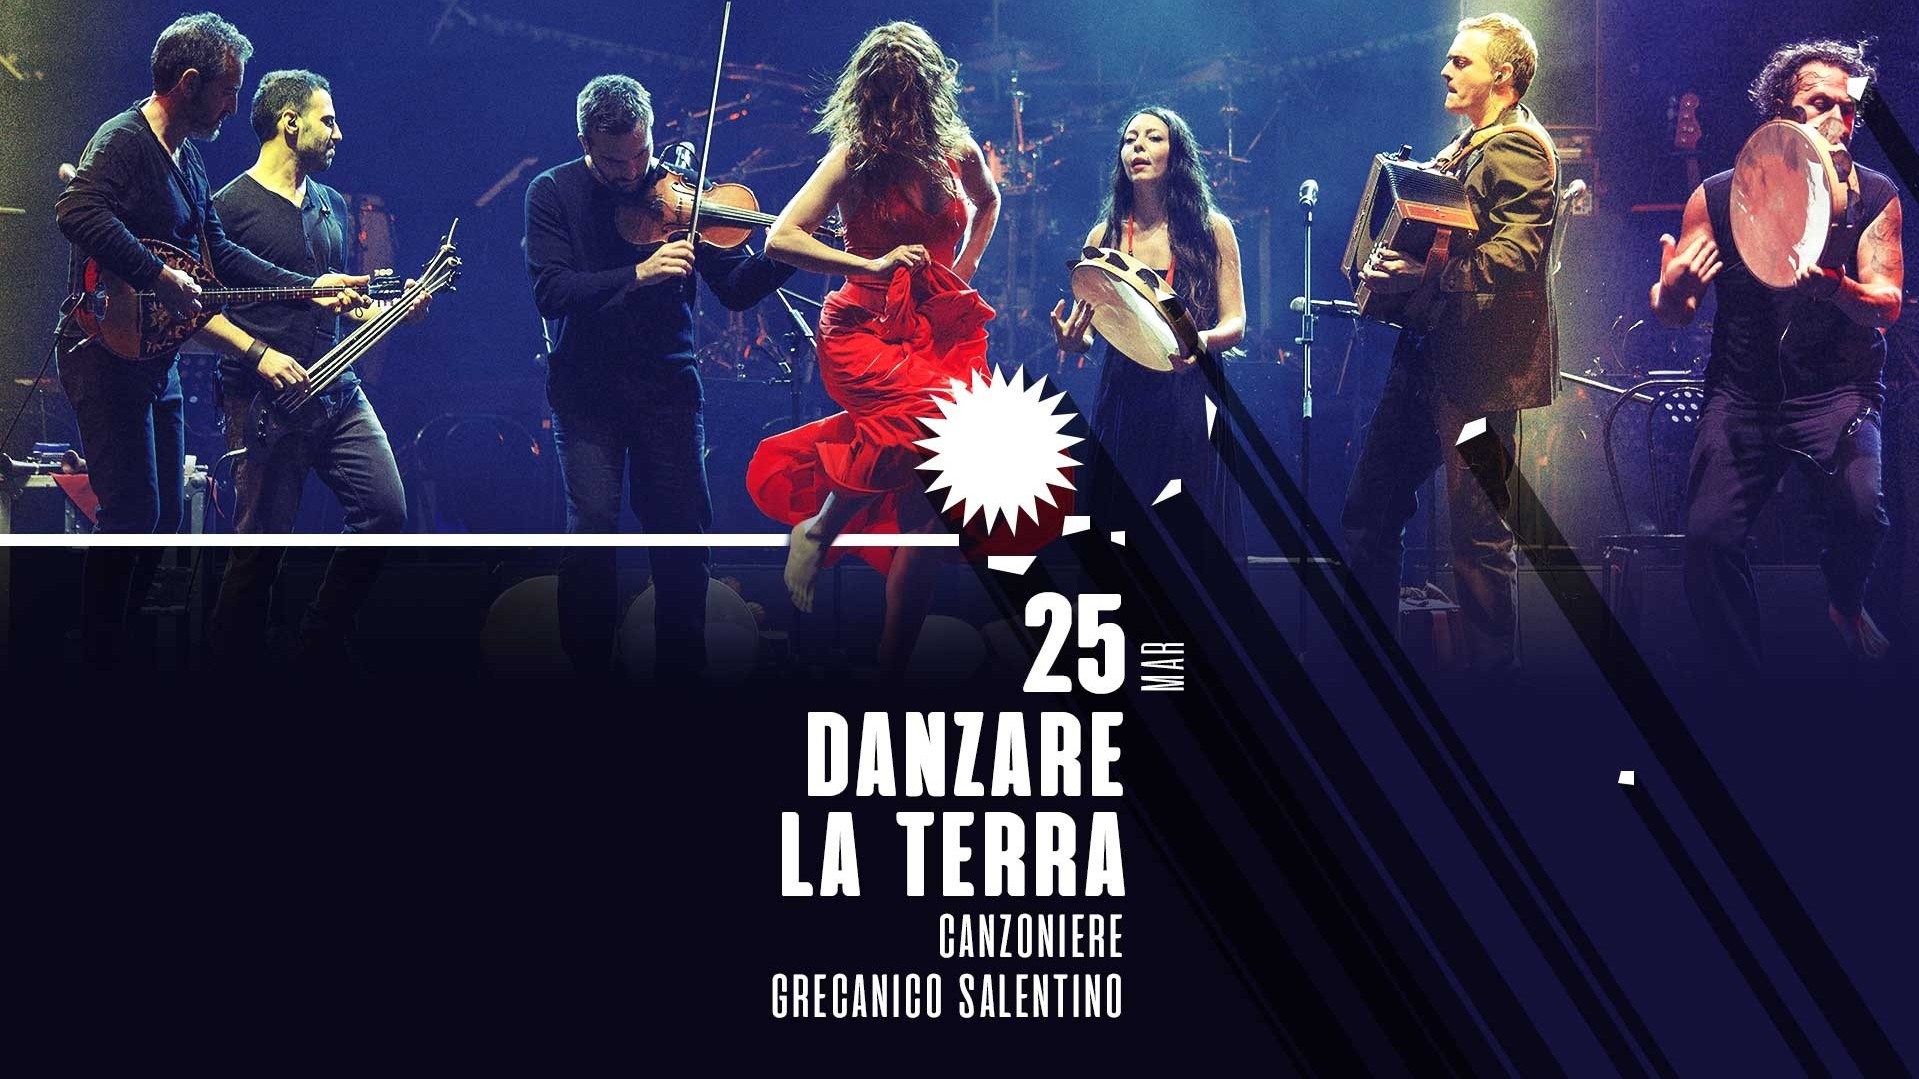 Danzare La Terra - Canzoniere Grecanico Salentino